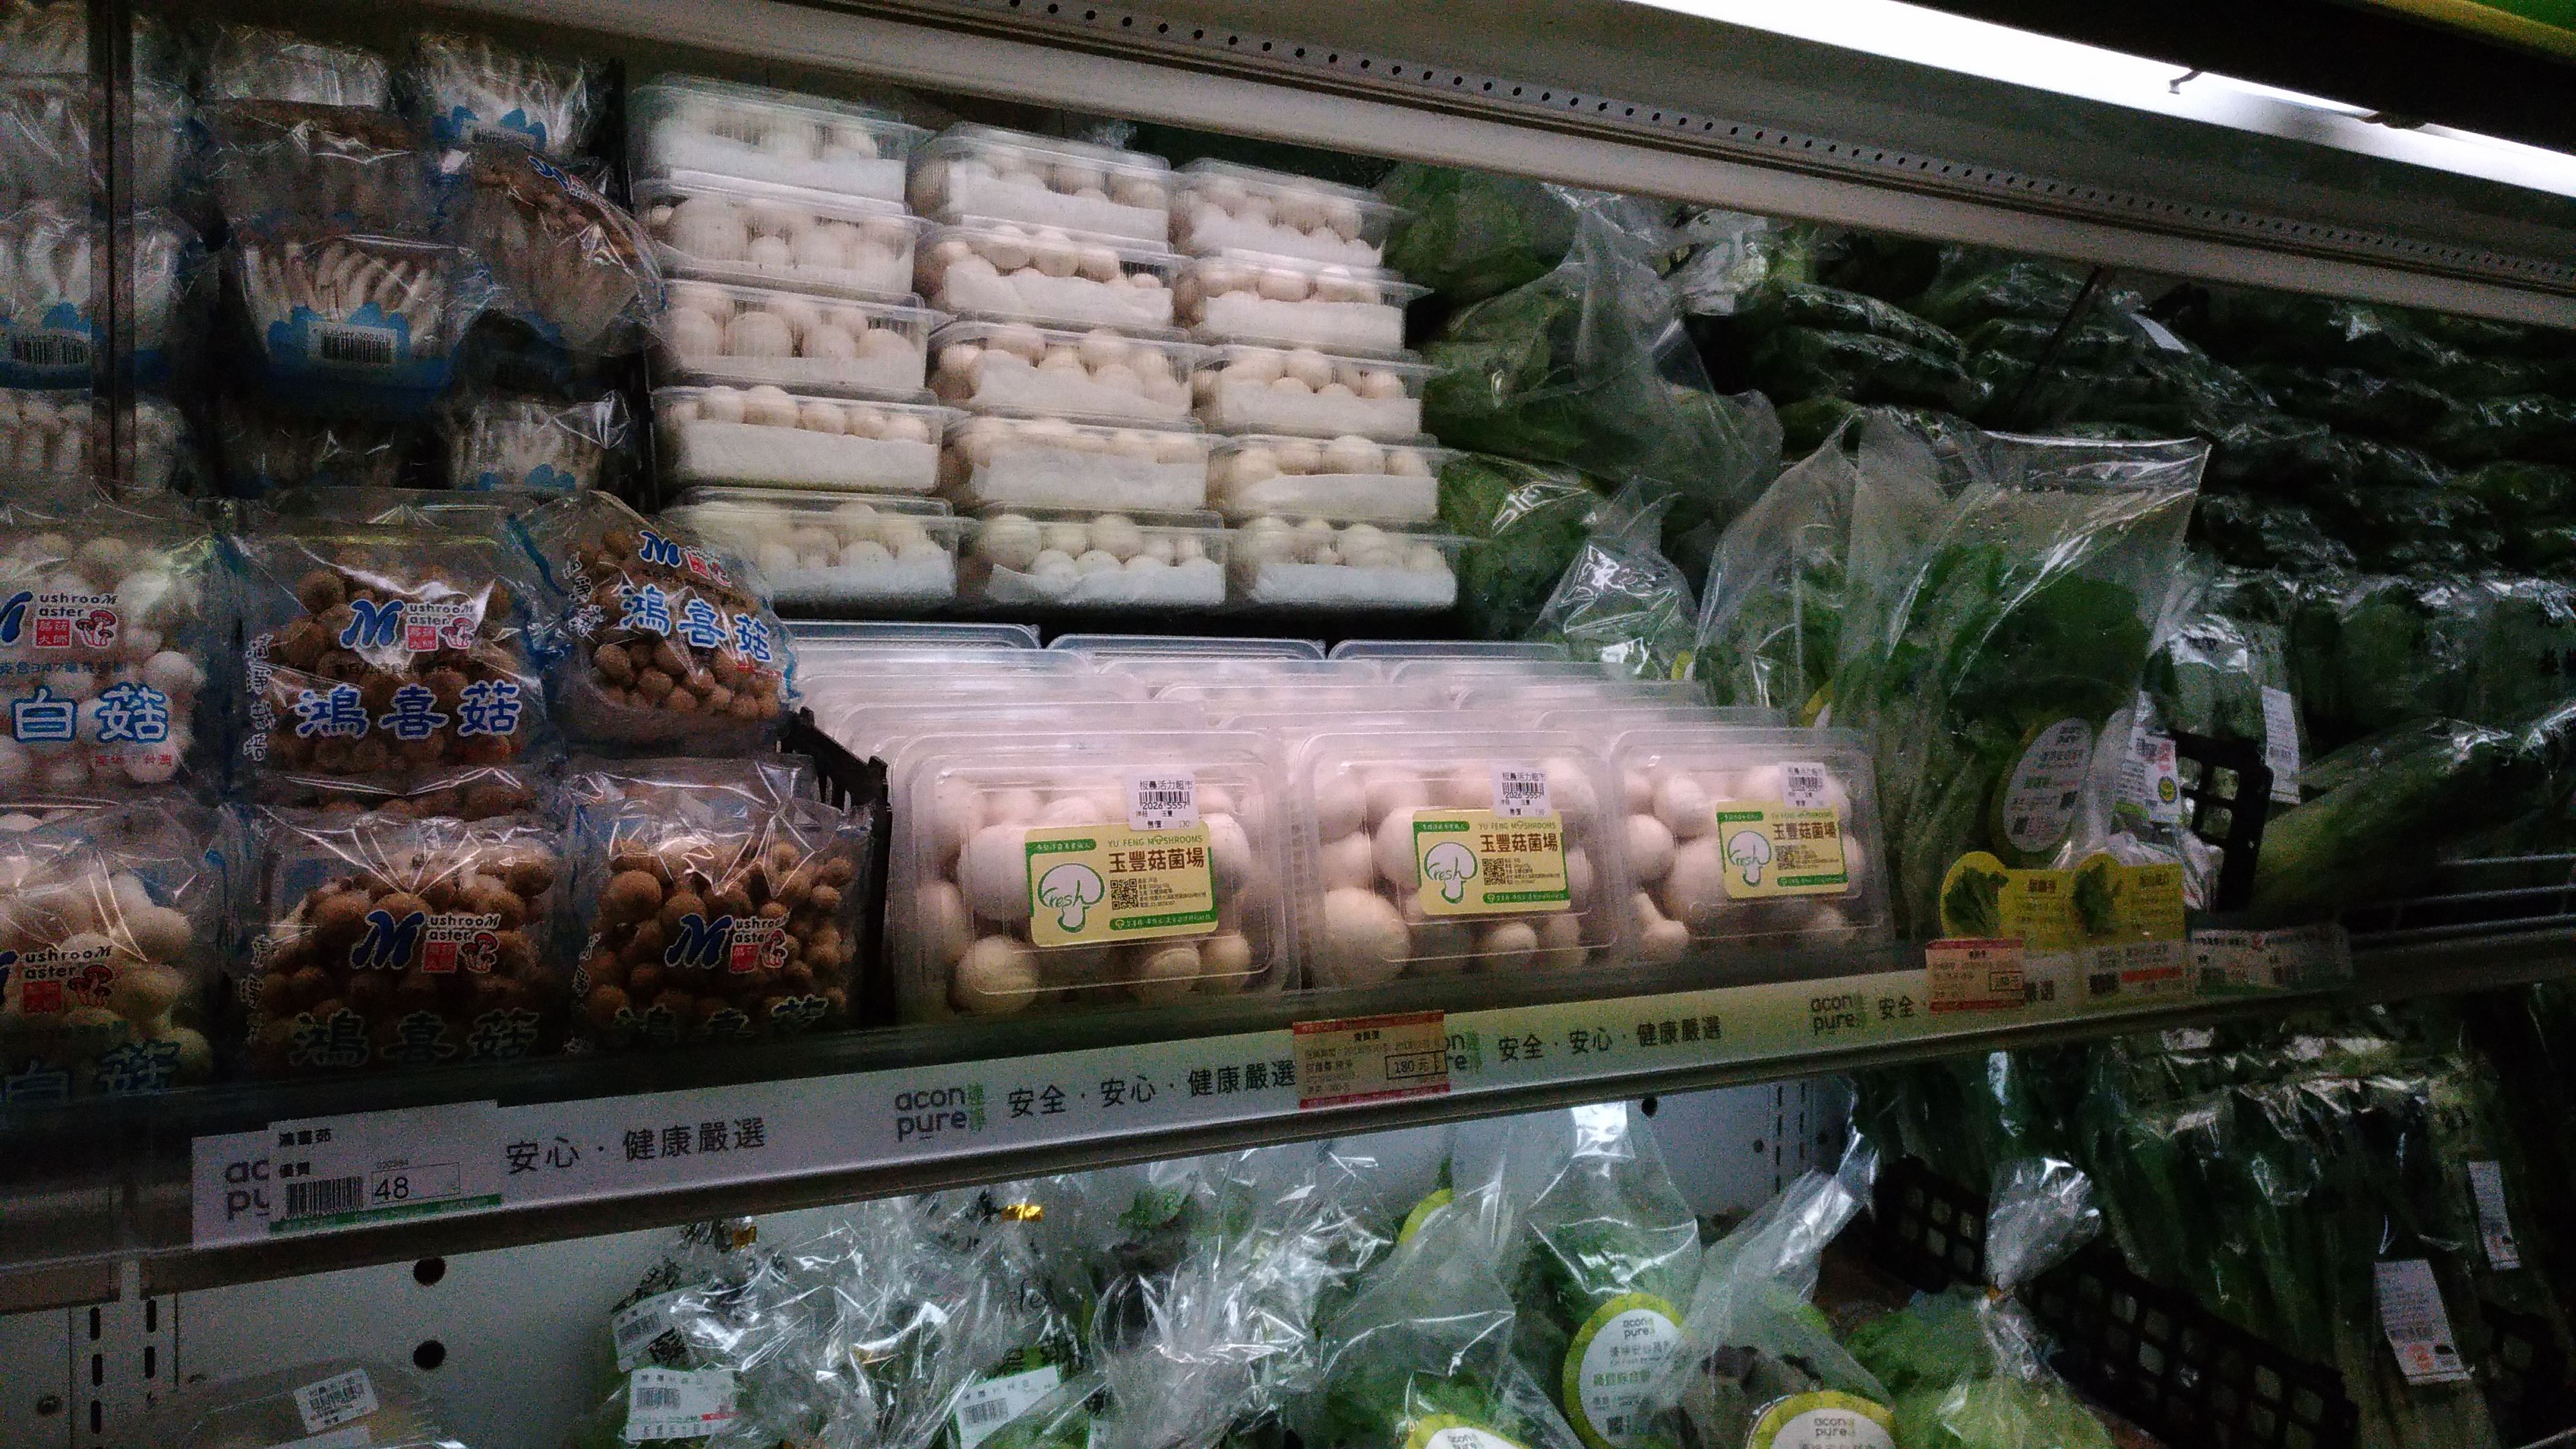 玉豐洋菇於新北市板橋區農會活力超市大量上架情況